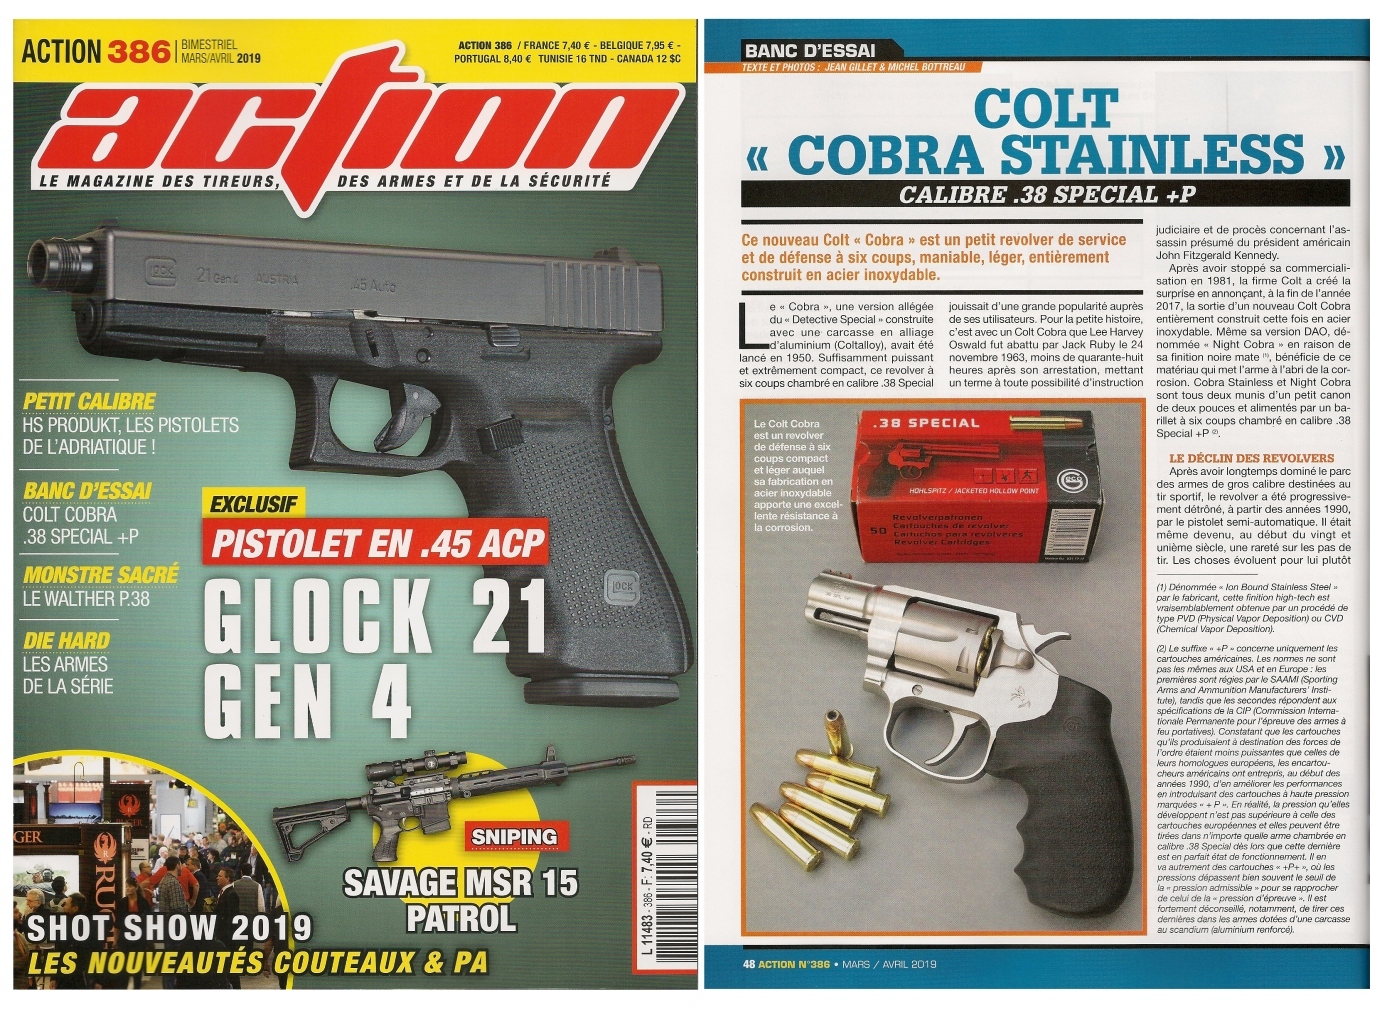 Le banc d’essai du revolver Colt Cobra Stainless a été publié sur 5 pages dans le magazine Action n°386 (mars/avril 2019).